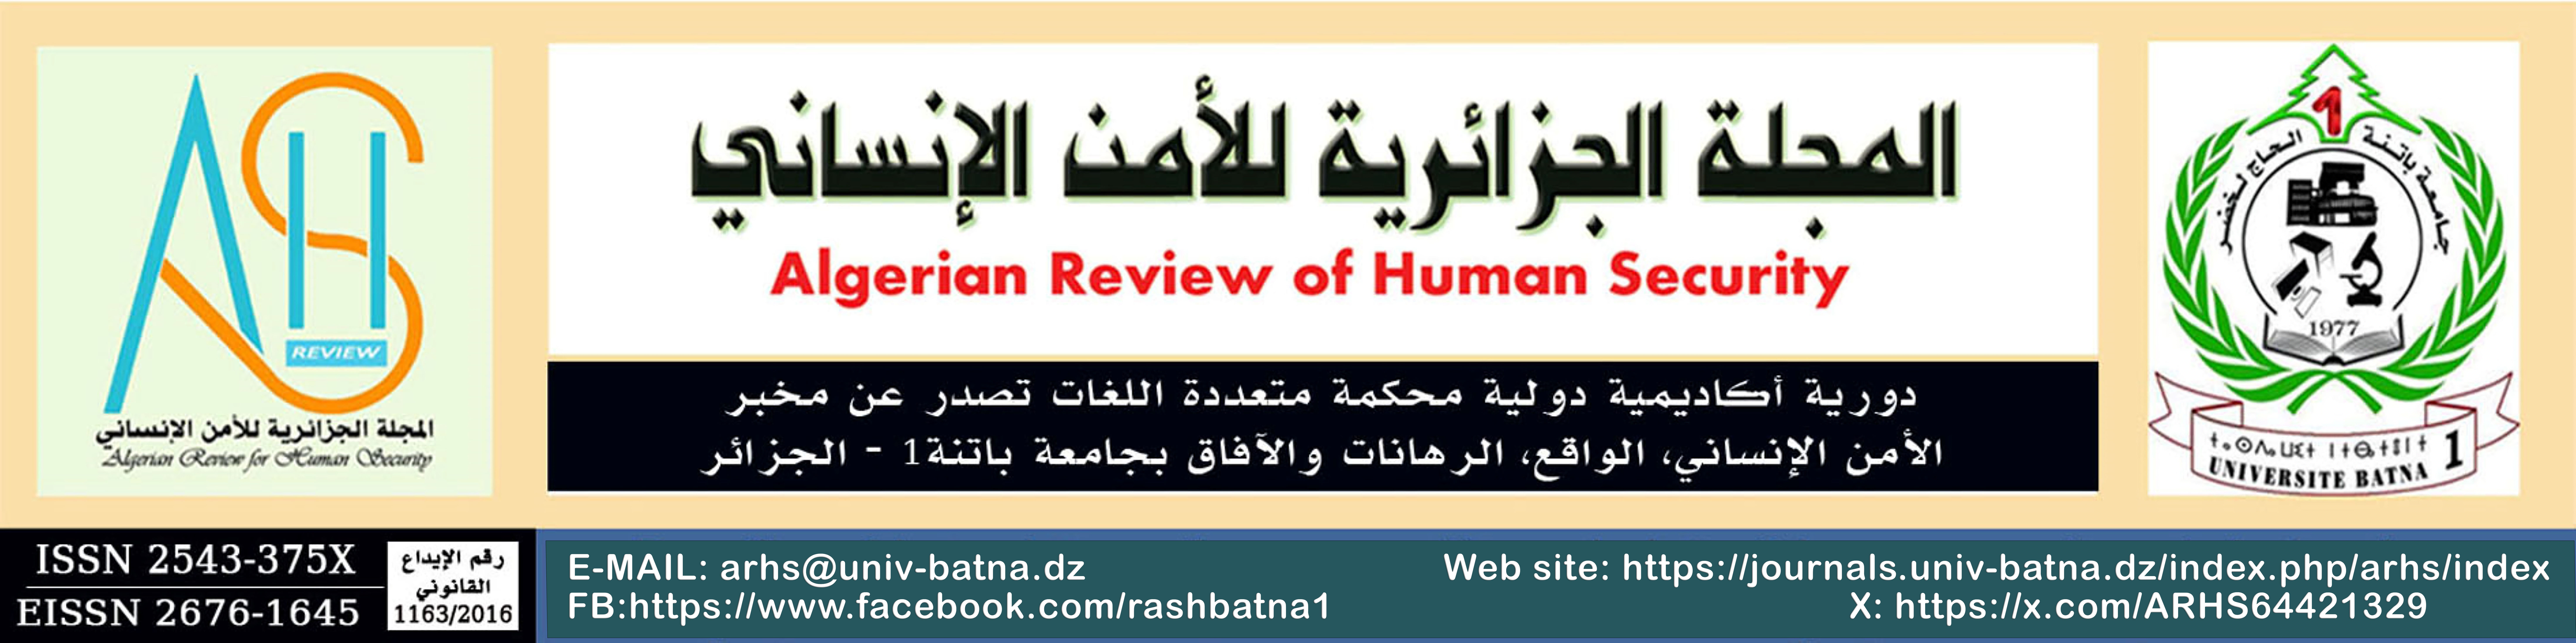 معلومات الوصول إلى المجلة الجزائرية للأمن الإنساني عبر مختلف المنصات